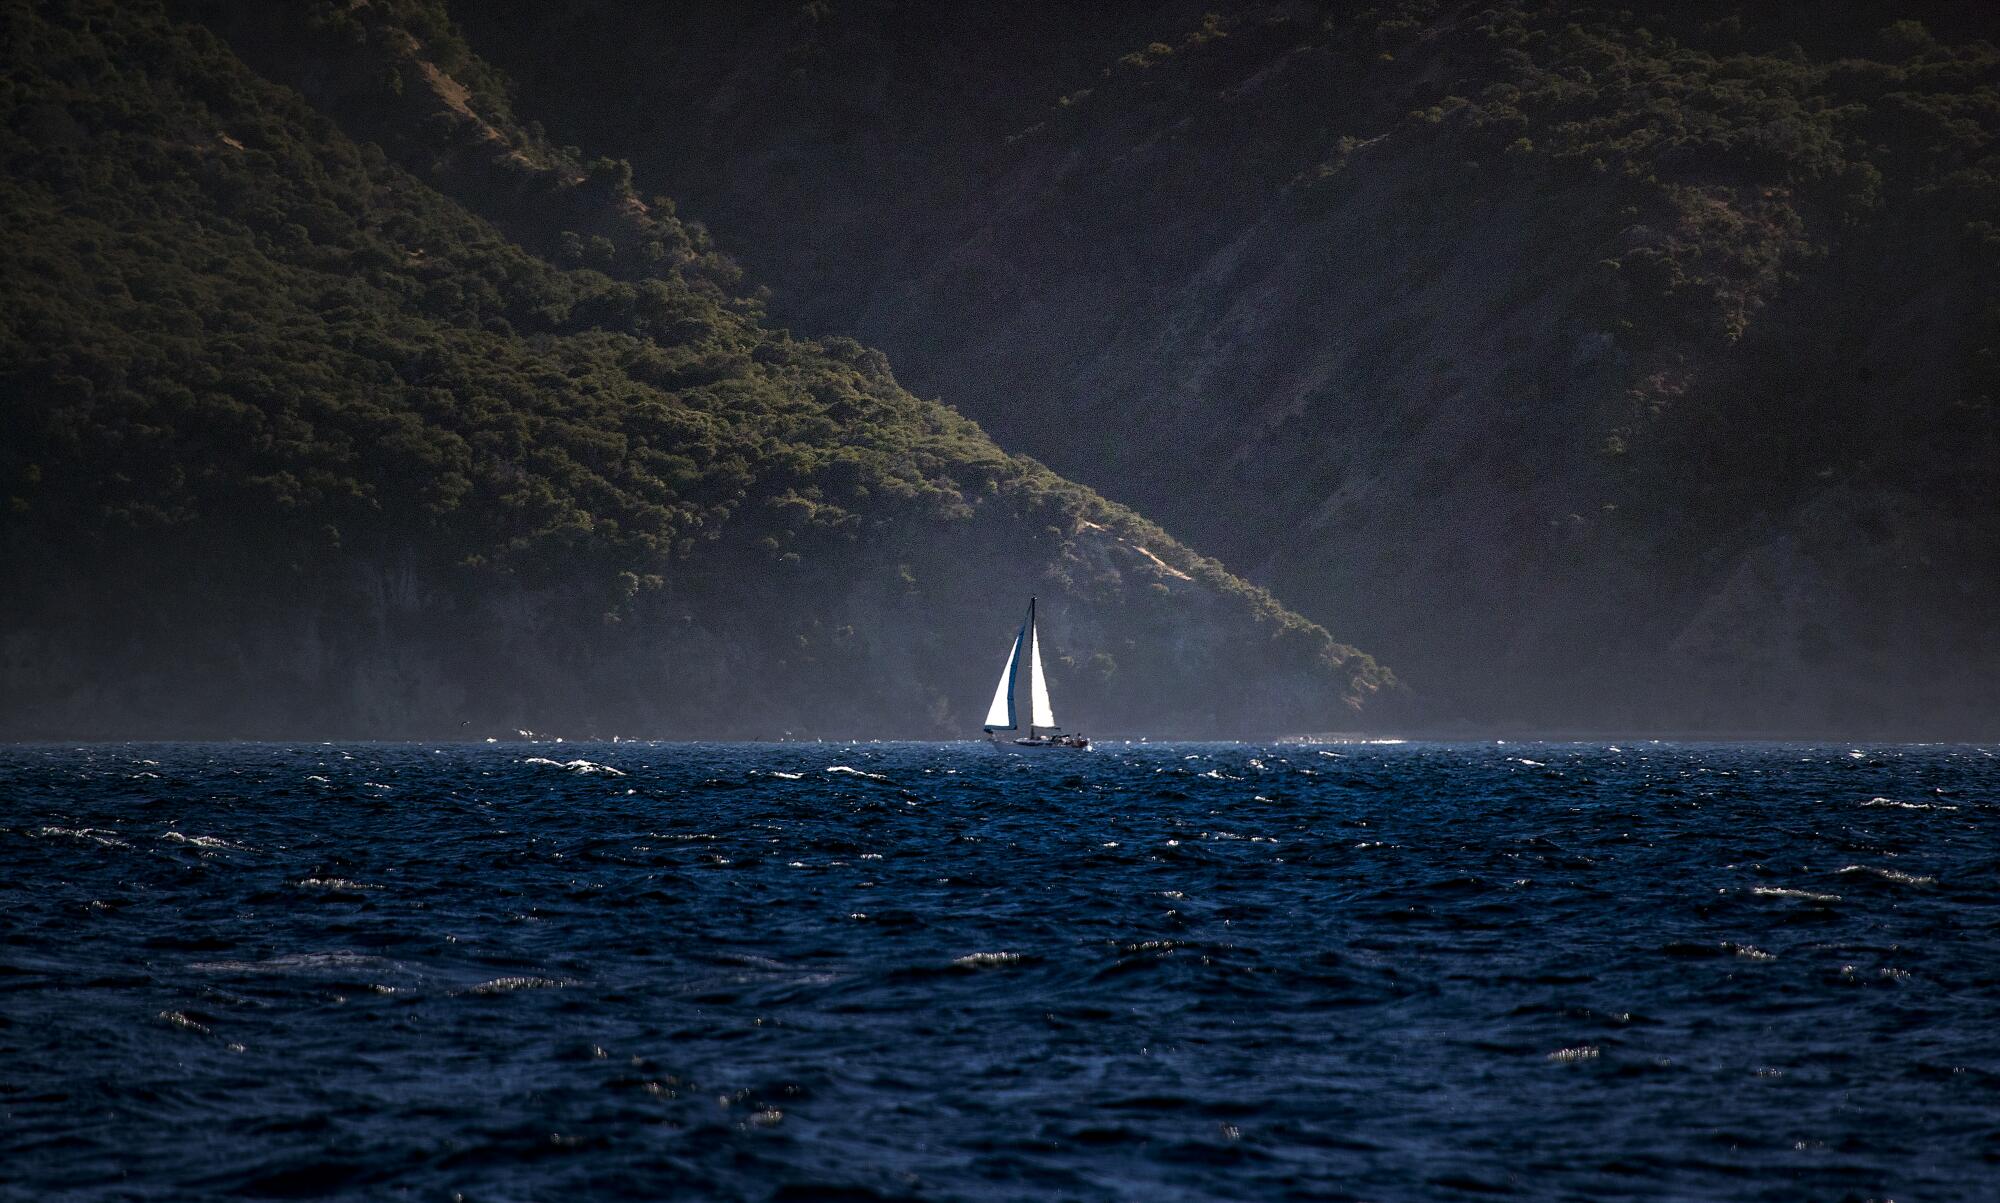 岛上的山脉在一艘孤独的帆船后面拔地而起。